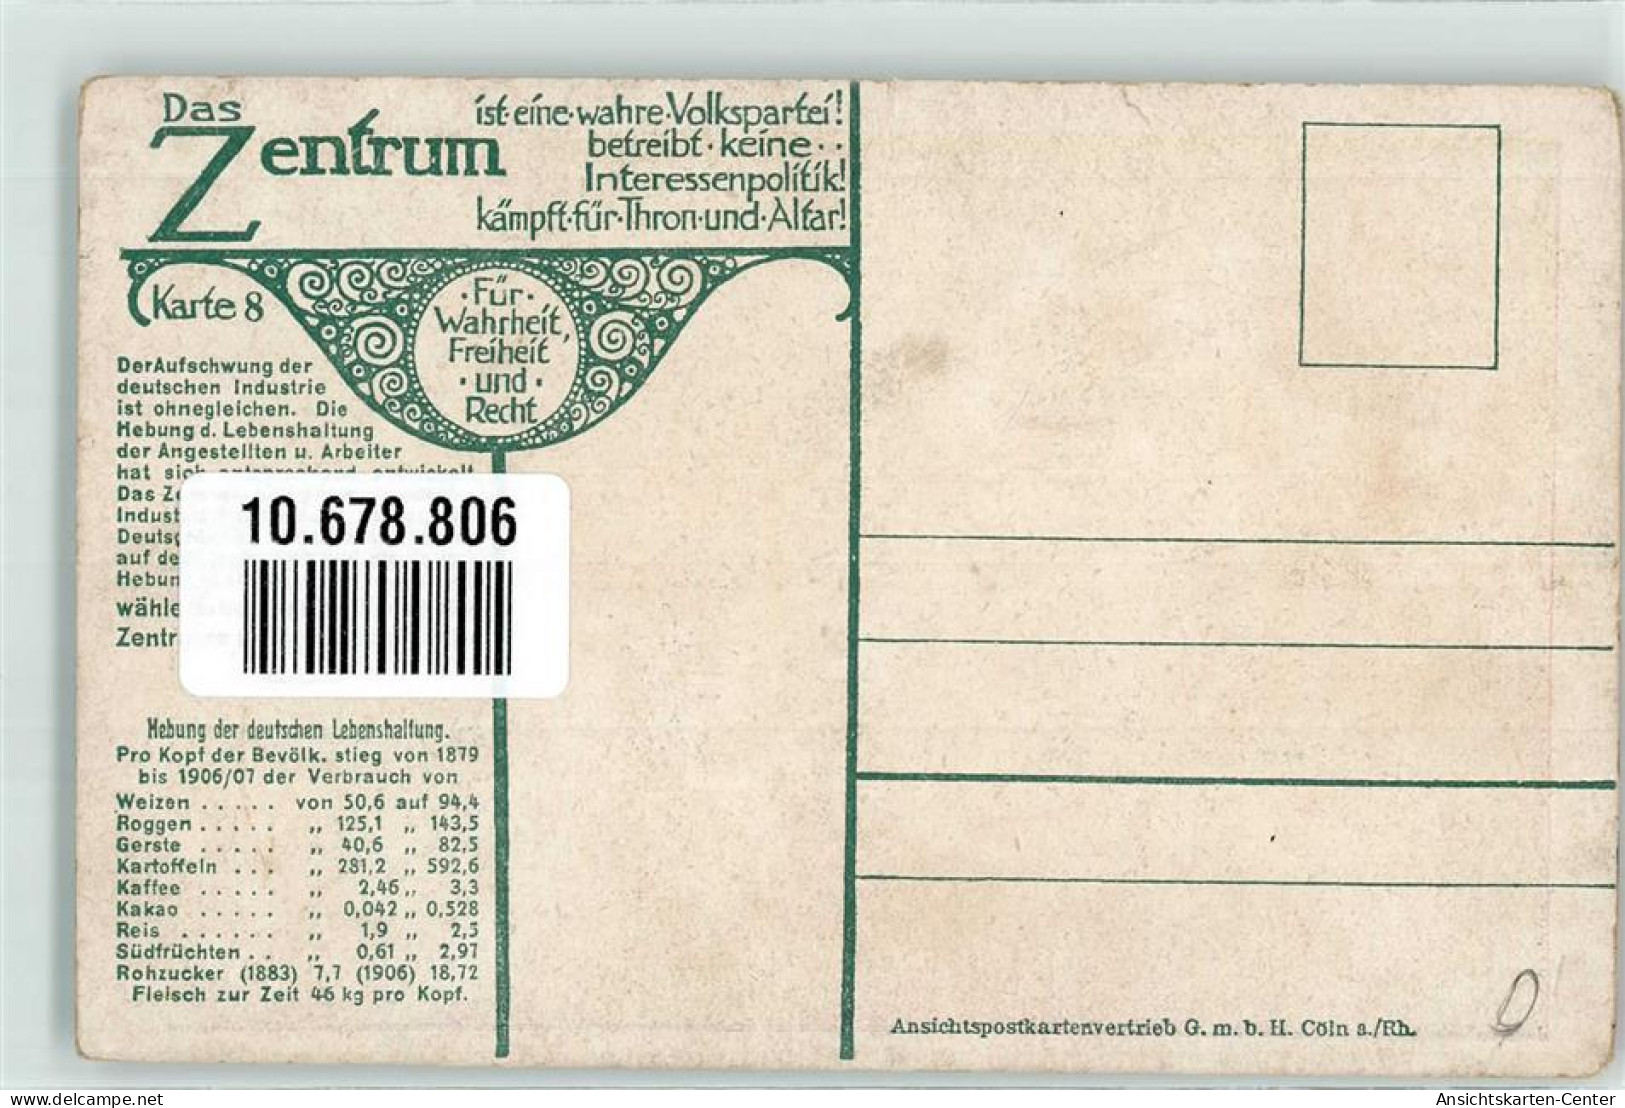 10678806 - Karte 8 Das Zentrum  Volkspartei  Industrie Politik  Anwachsen Des Deutschen Welthandels 1910 - Ereignisse